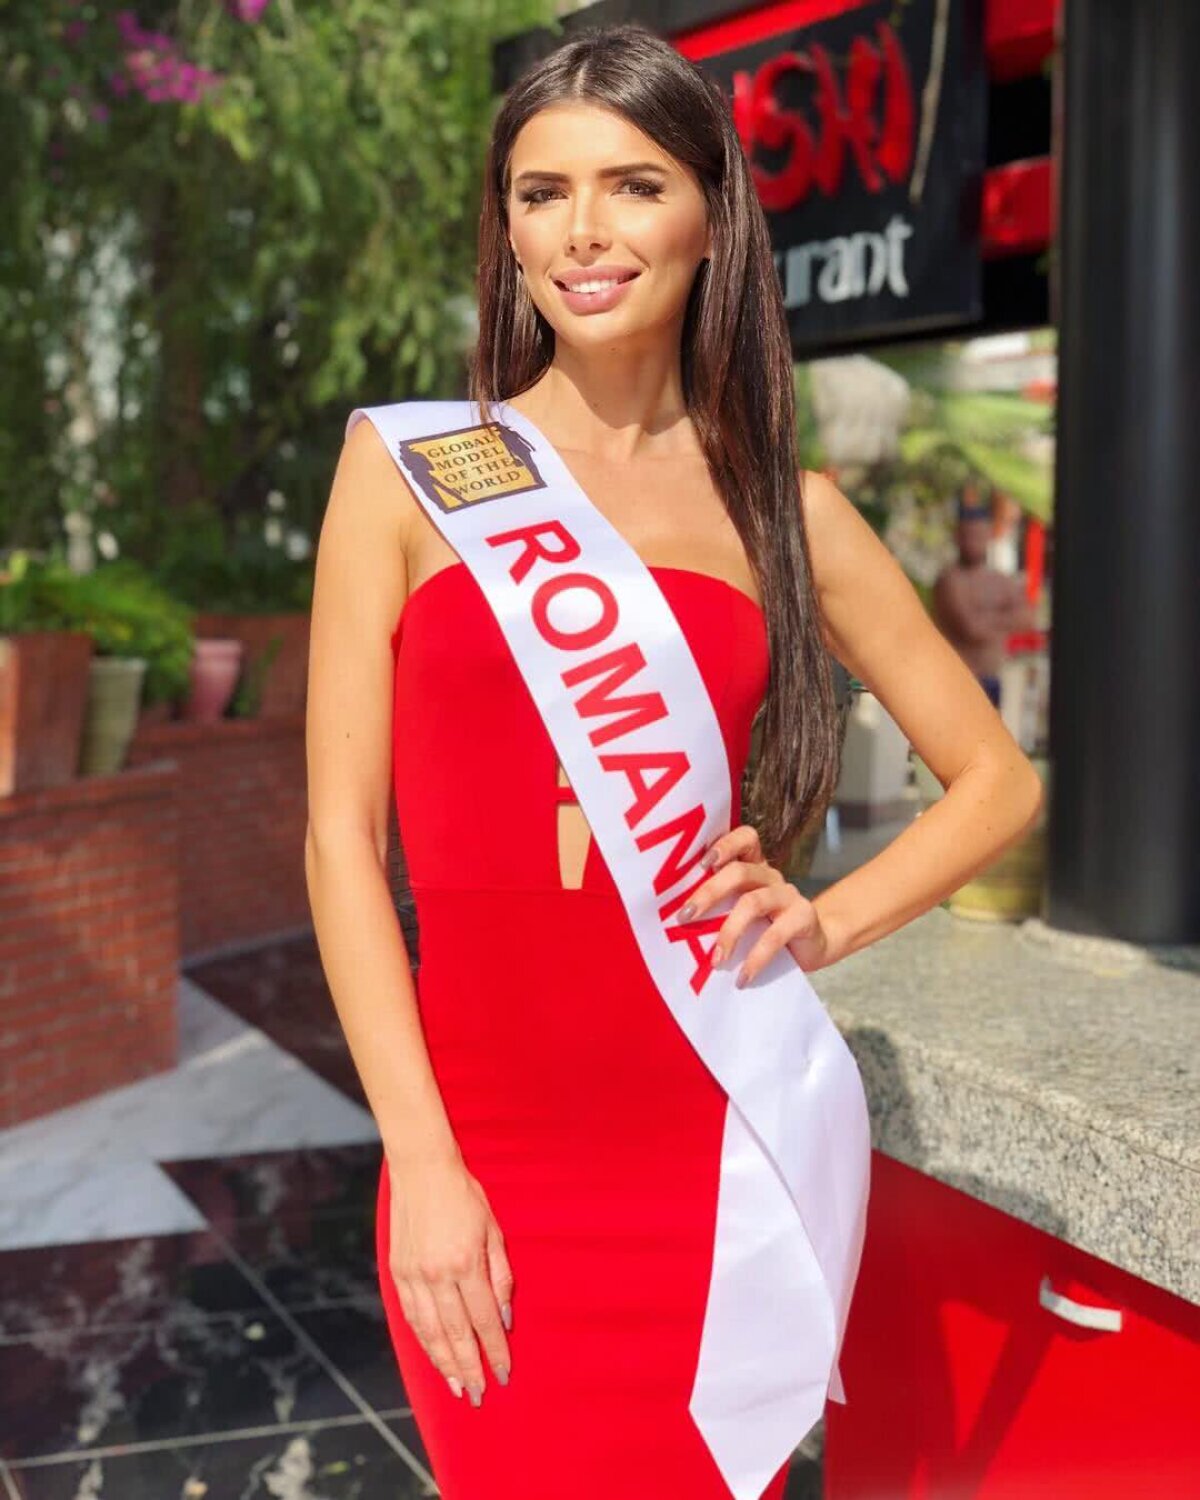 FOTO Dezvăluiri de culise ale româncei care a câștigat un concurs internațional de Miss » Cum s-a îndrăgostit: ”Important e să fii om, înainte de toate”